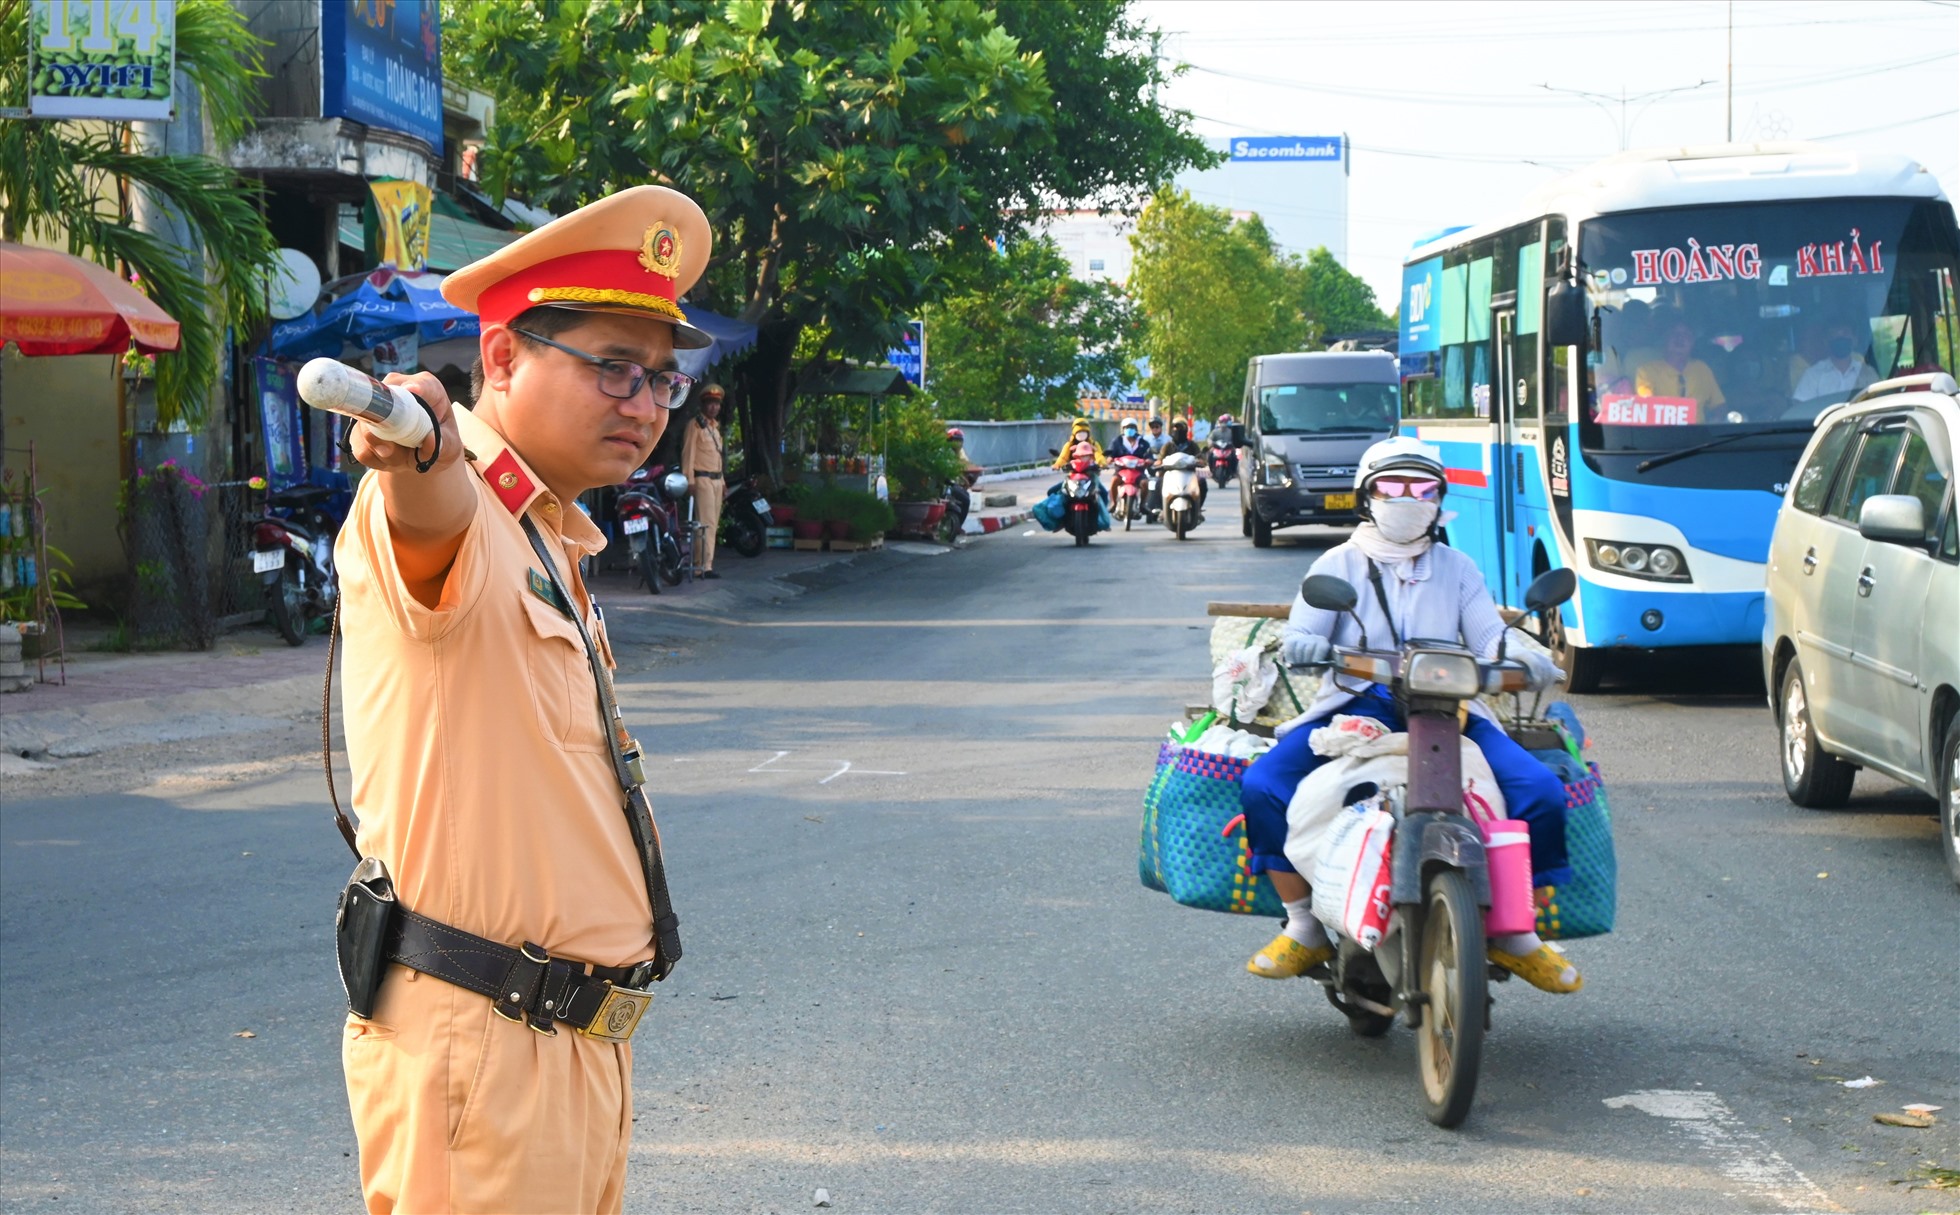 Trước tình hình trên, lực lượng cảnh sát giao thông của Công an tỉnh Tiền Giang đã có mặt để điều tiết tránh ùn tắc kéo dài.